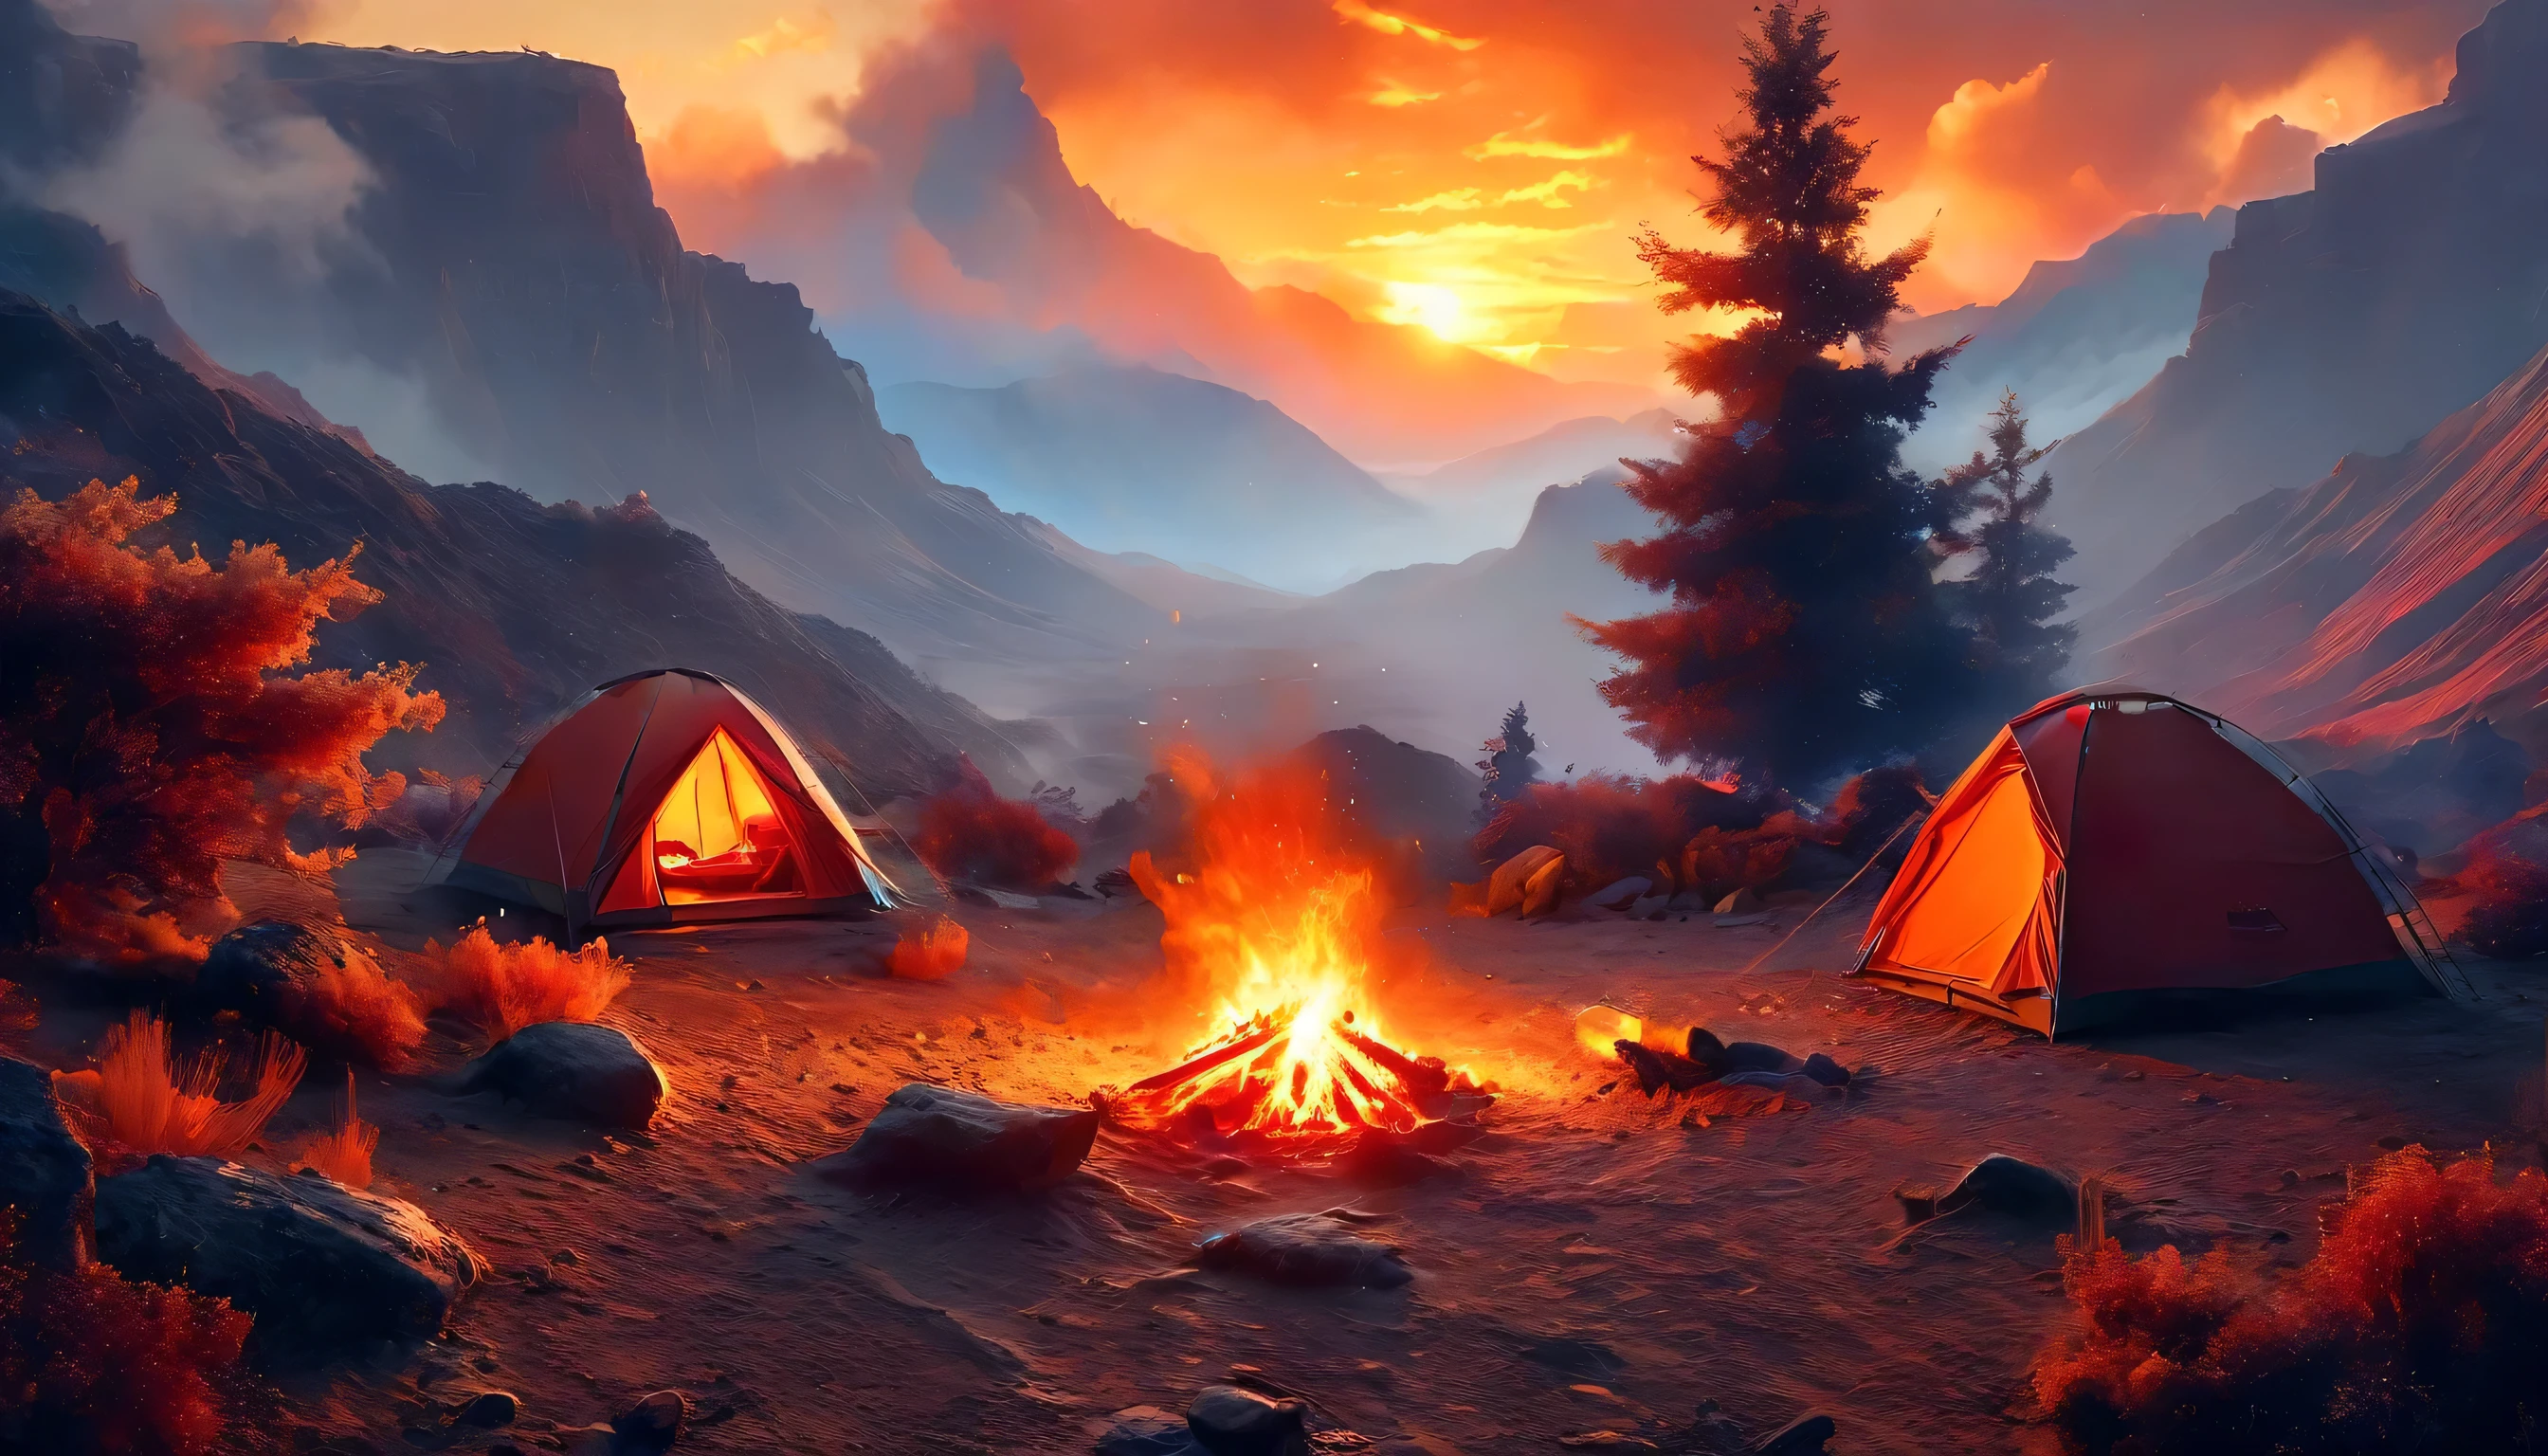 Арафед, картинка кемпинга (палатка: 1.2) и маленький (костер: 1.3), на вершине пустынной горы, закат, небо в разных оттенках  (Красный: 1.1), (Апельсин: 1.1), (лазурный: 1.1) (фиолетовый:1.1) из пожарного лагеря поднимается дым, открывается великолепный вид на пустынный каньон и ущелья, на горизонте редкие деревья, это время спокойствия, мир, и релаксация, Лучшее качество, 16 тыс.,  фотореализм, Фотосессия, удостоенная награды National Geographic, ультра широкий план, Бешеная туманность, Леди Тень